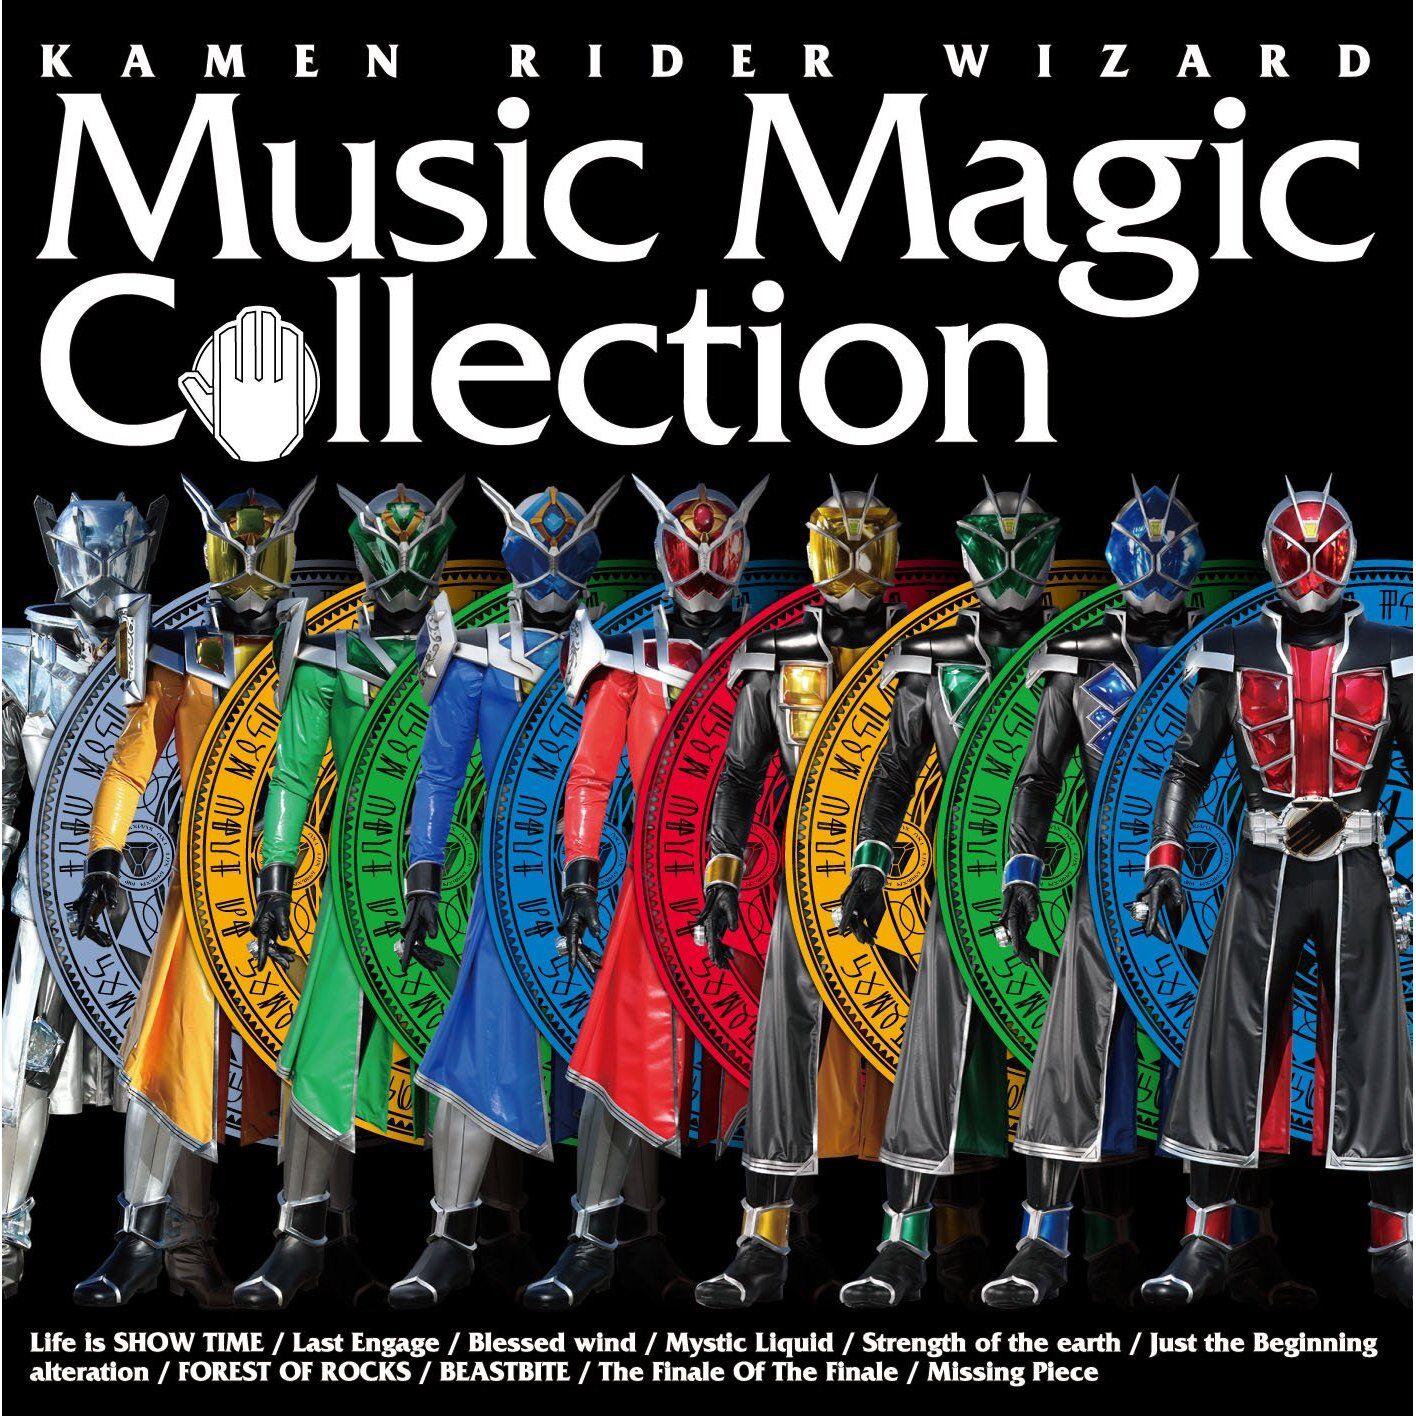 Kamen Rider Wizard Music Magic Collection Kamen Rider Wiki Fandom